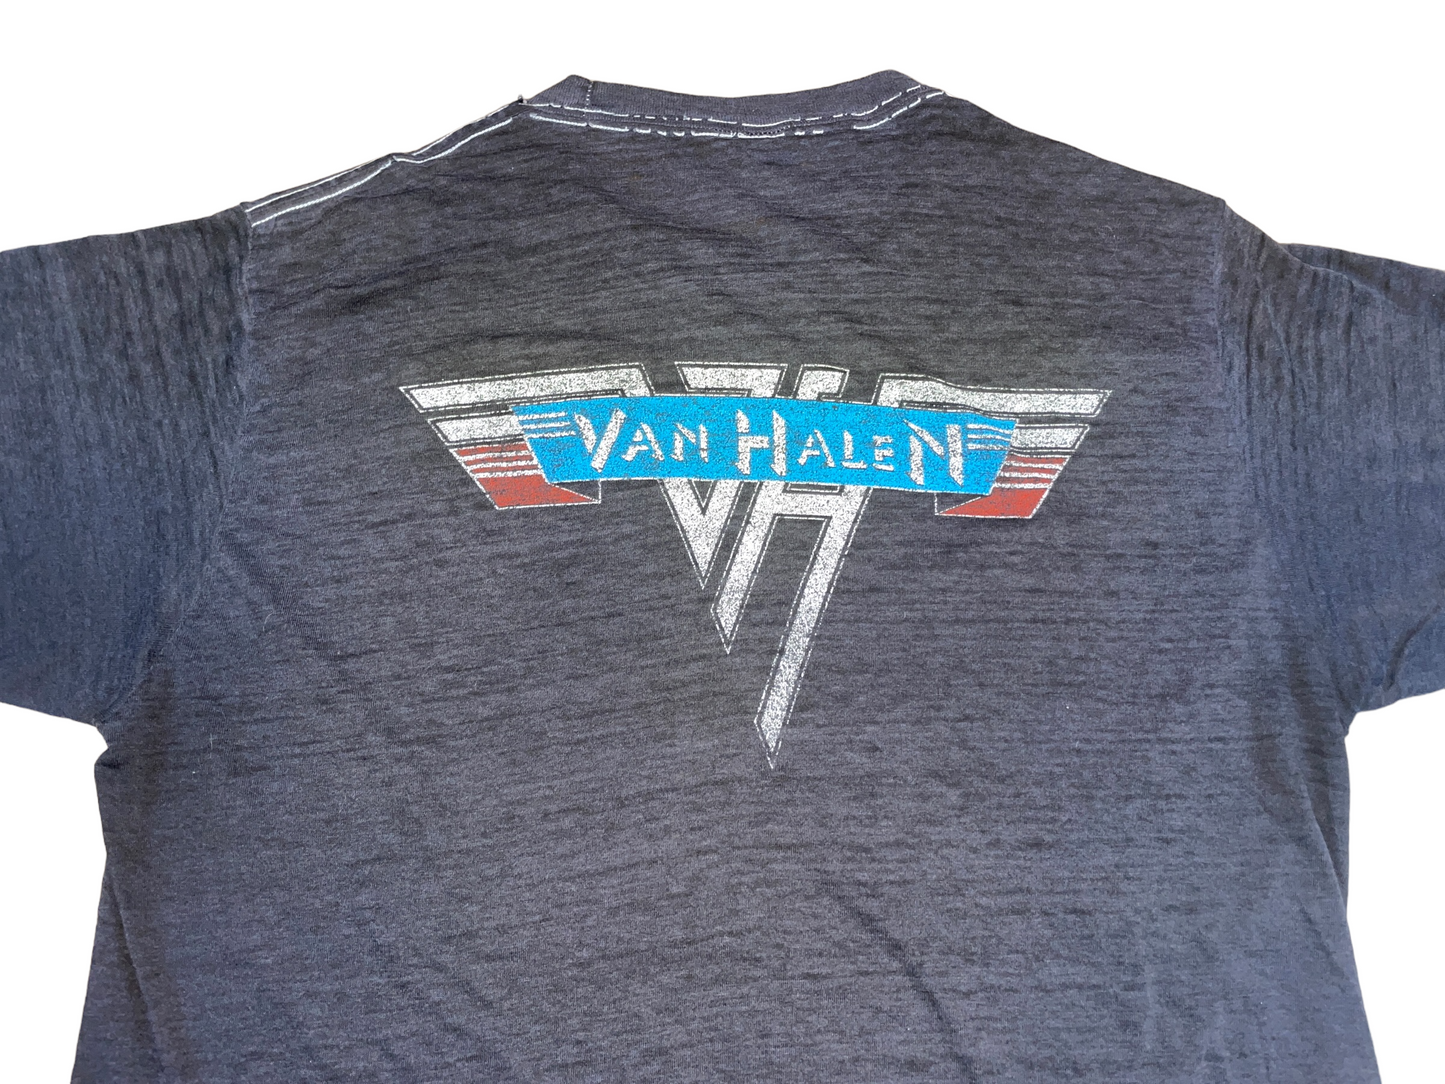 Vintage 80's Van Halen Tour T-Shirt